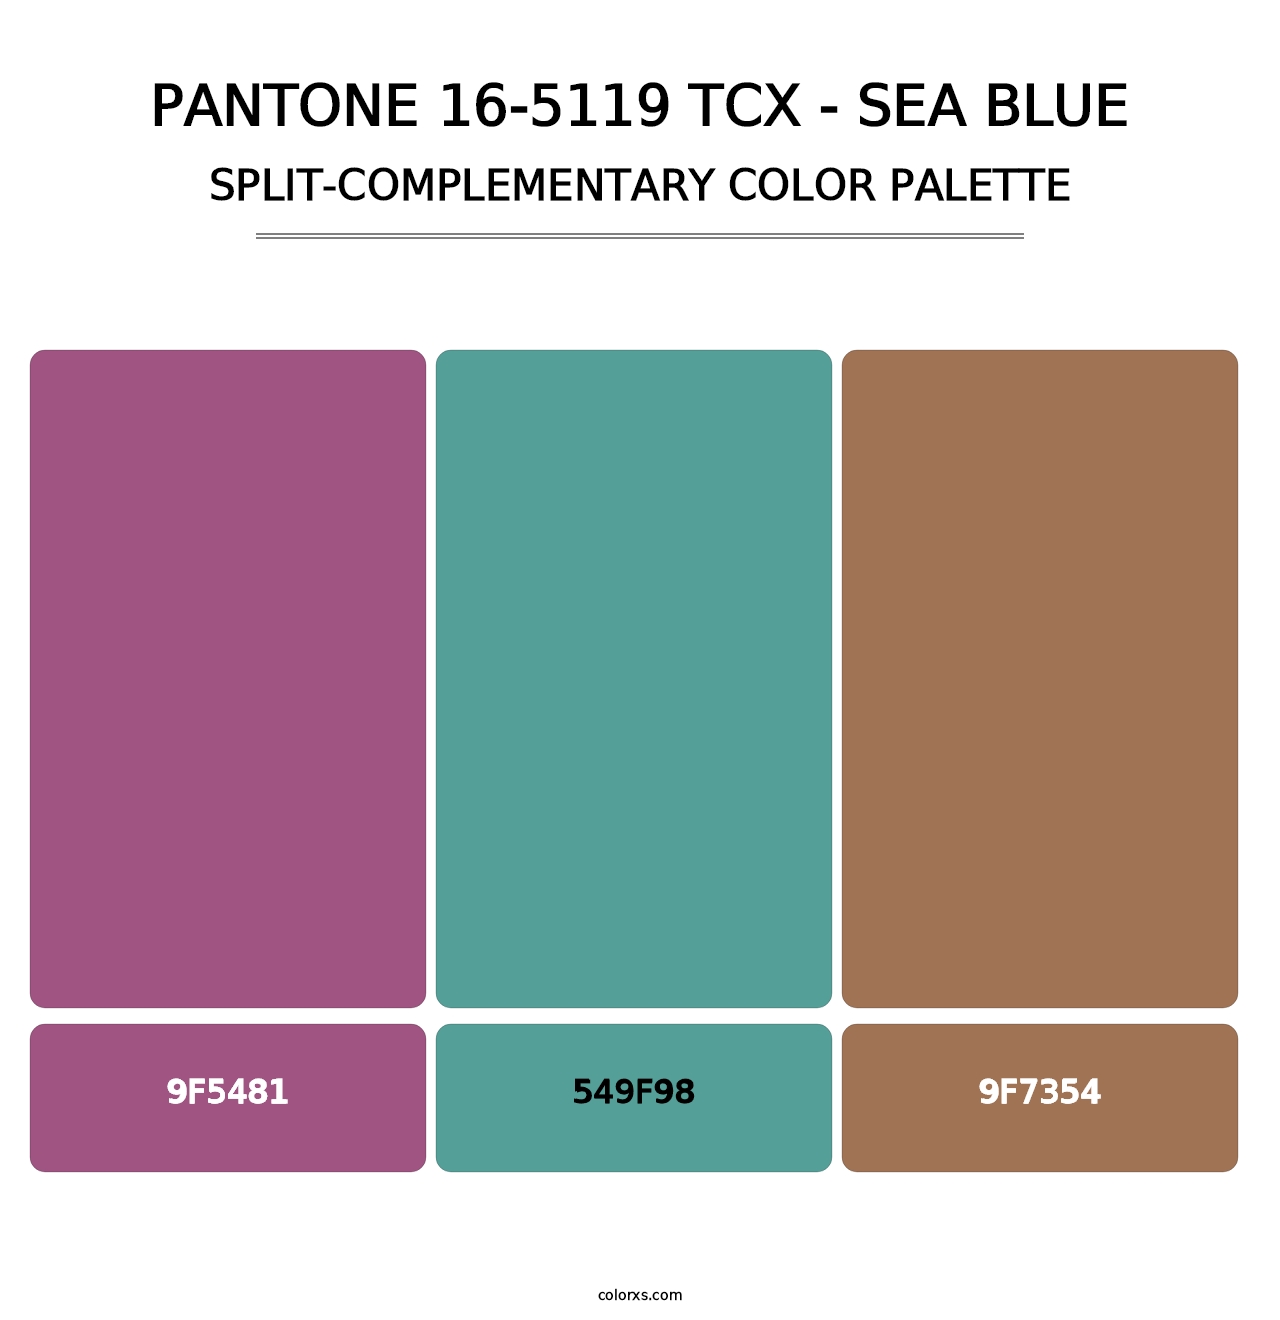 PANTONE 16-5119 TCX - Sea Blue - Split-Complementary Color Palette